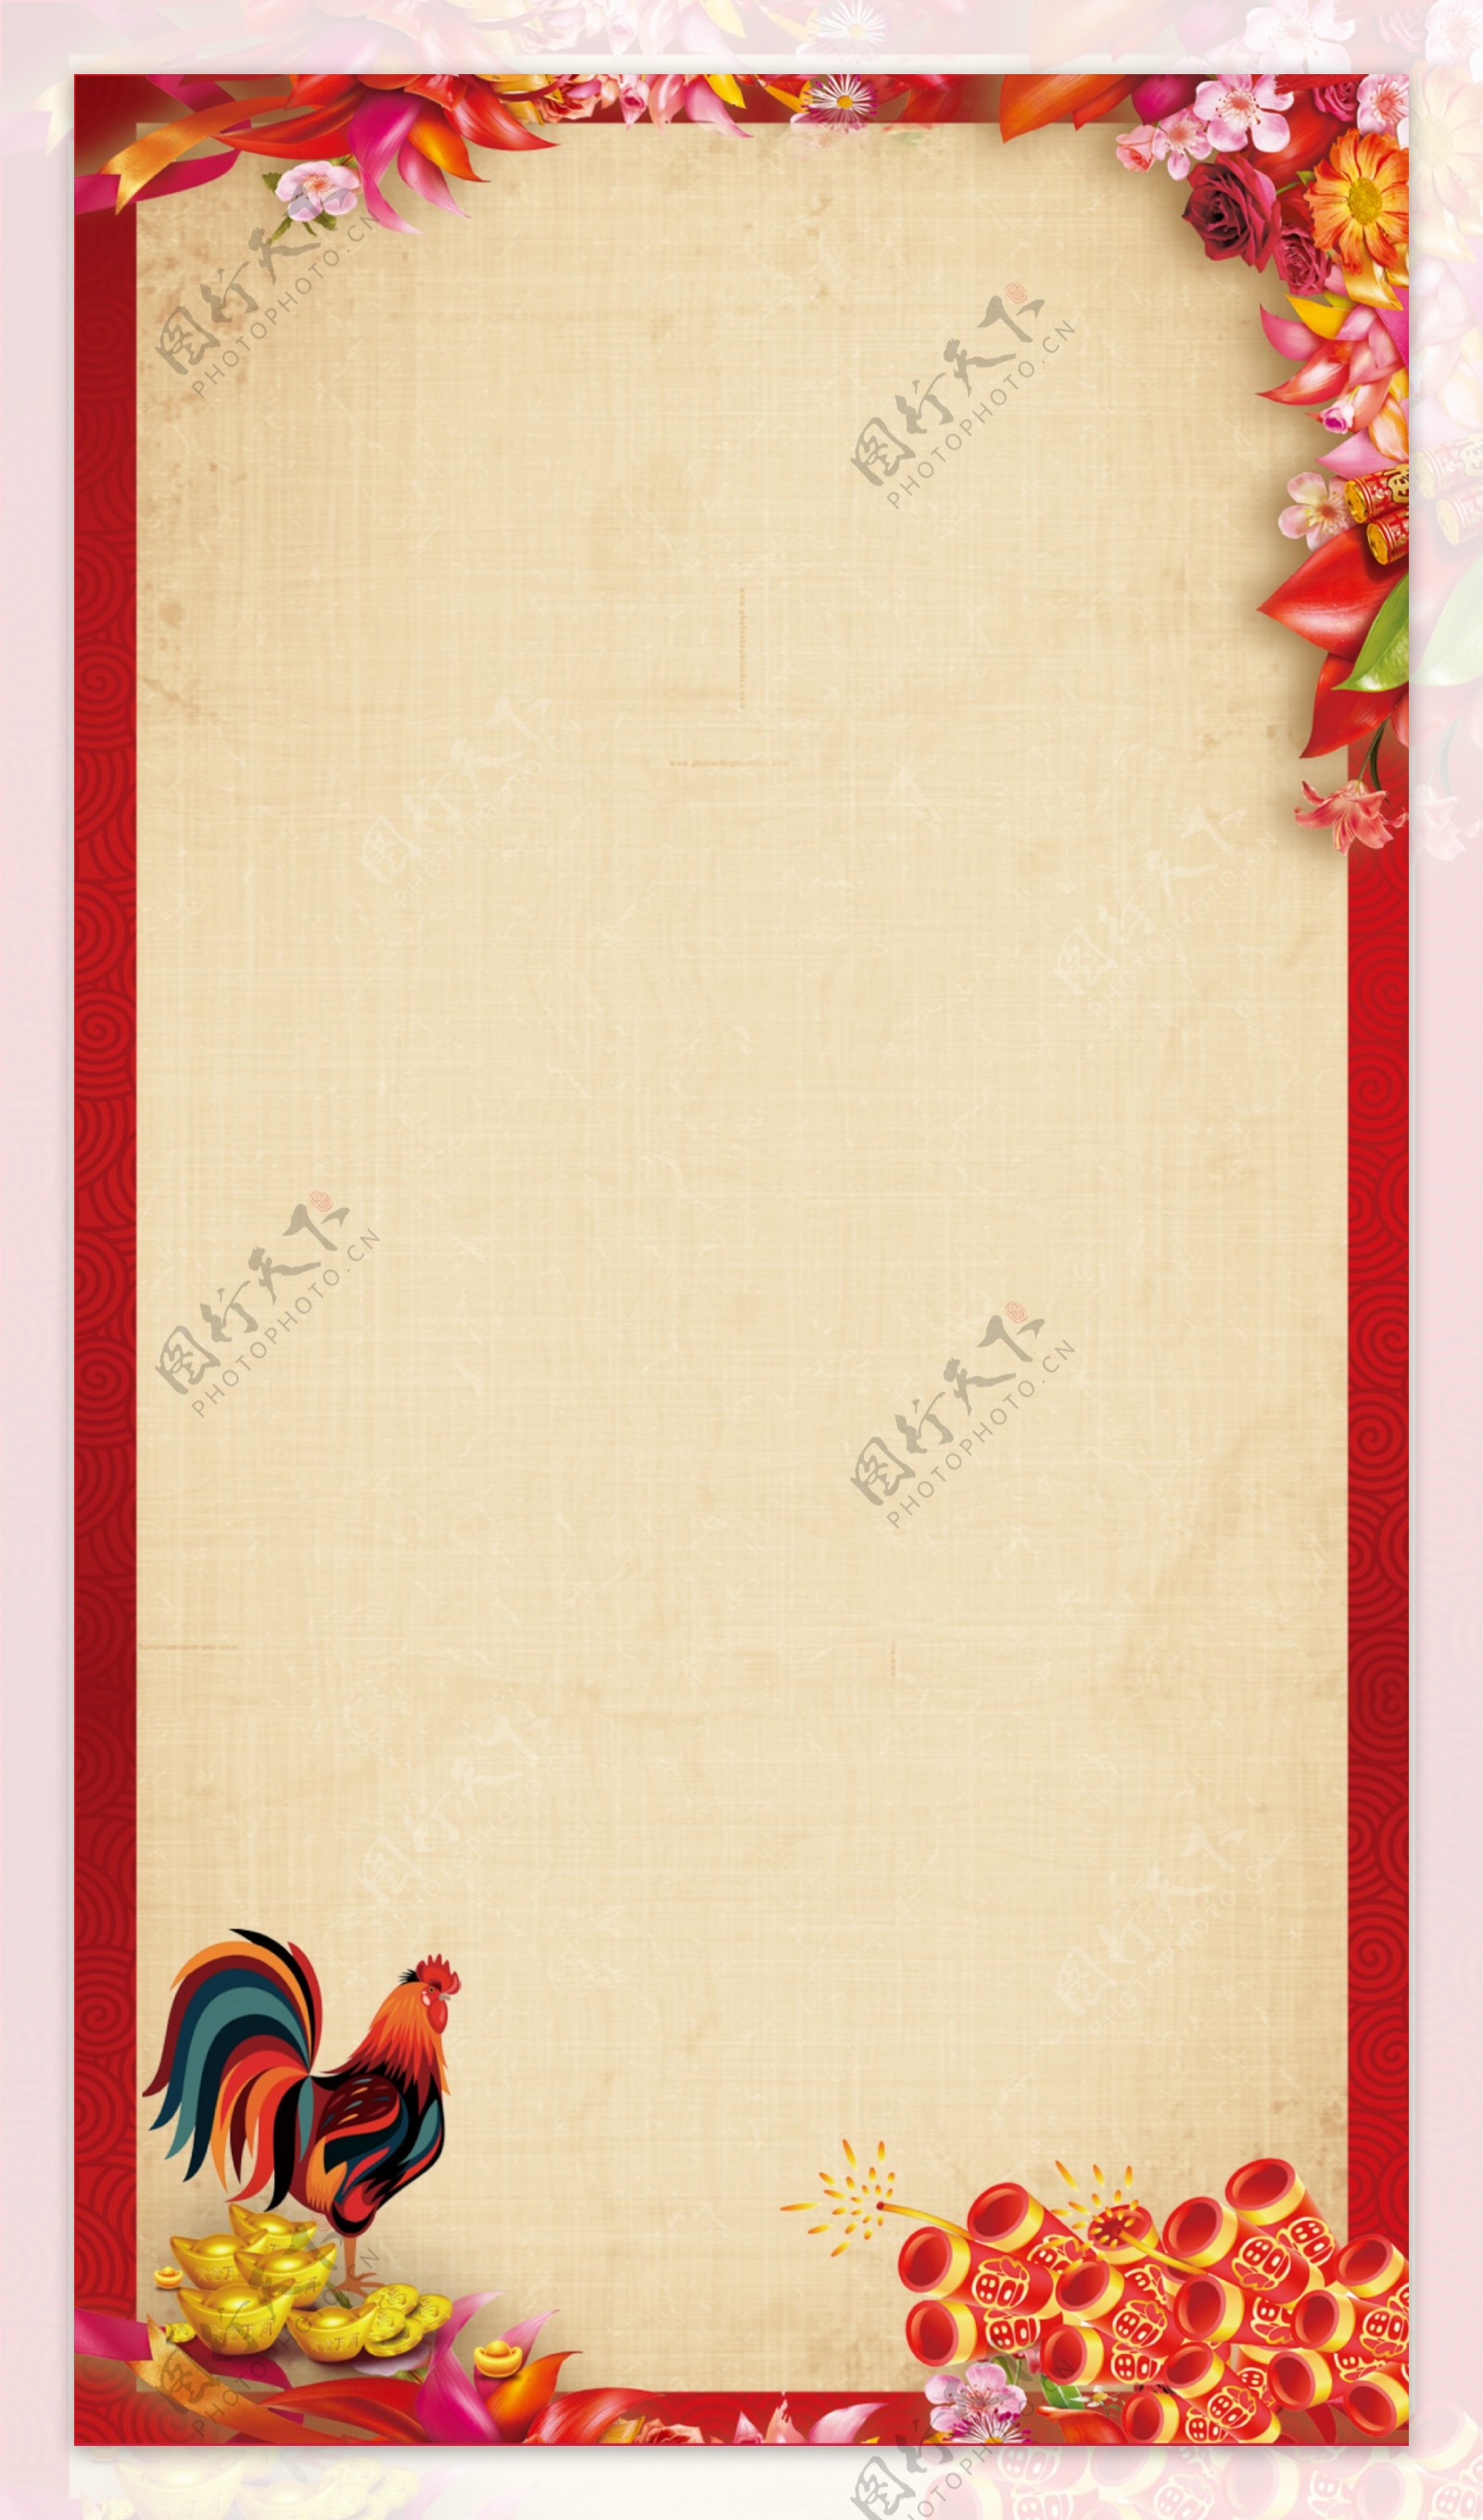 手绘红色花朵边框鸡年H5背景素材